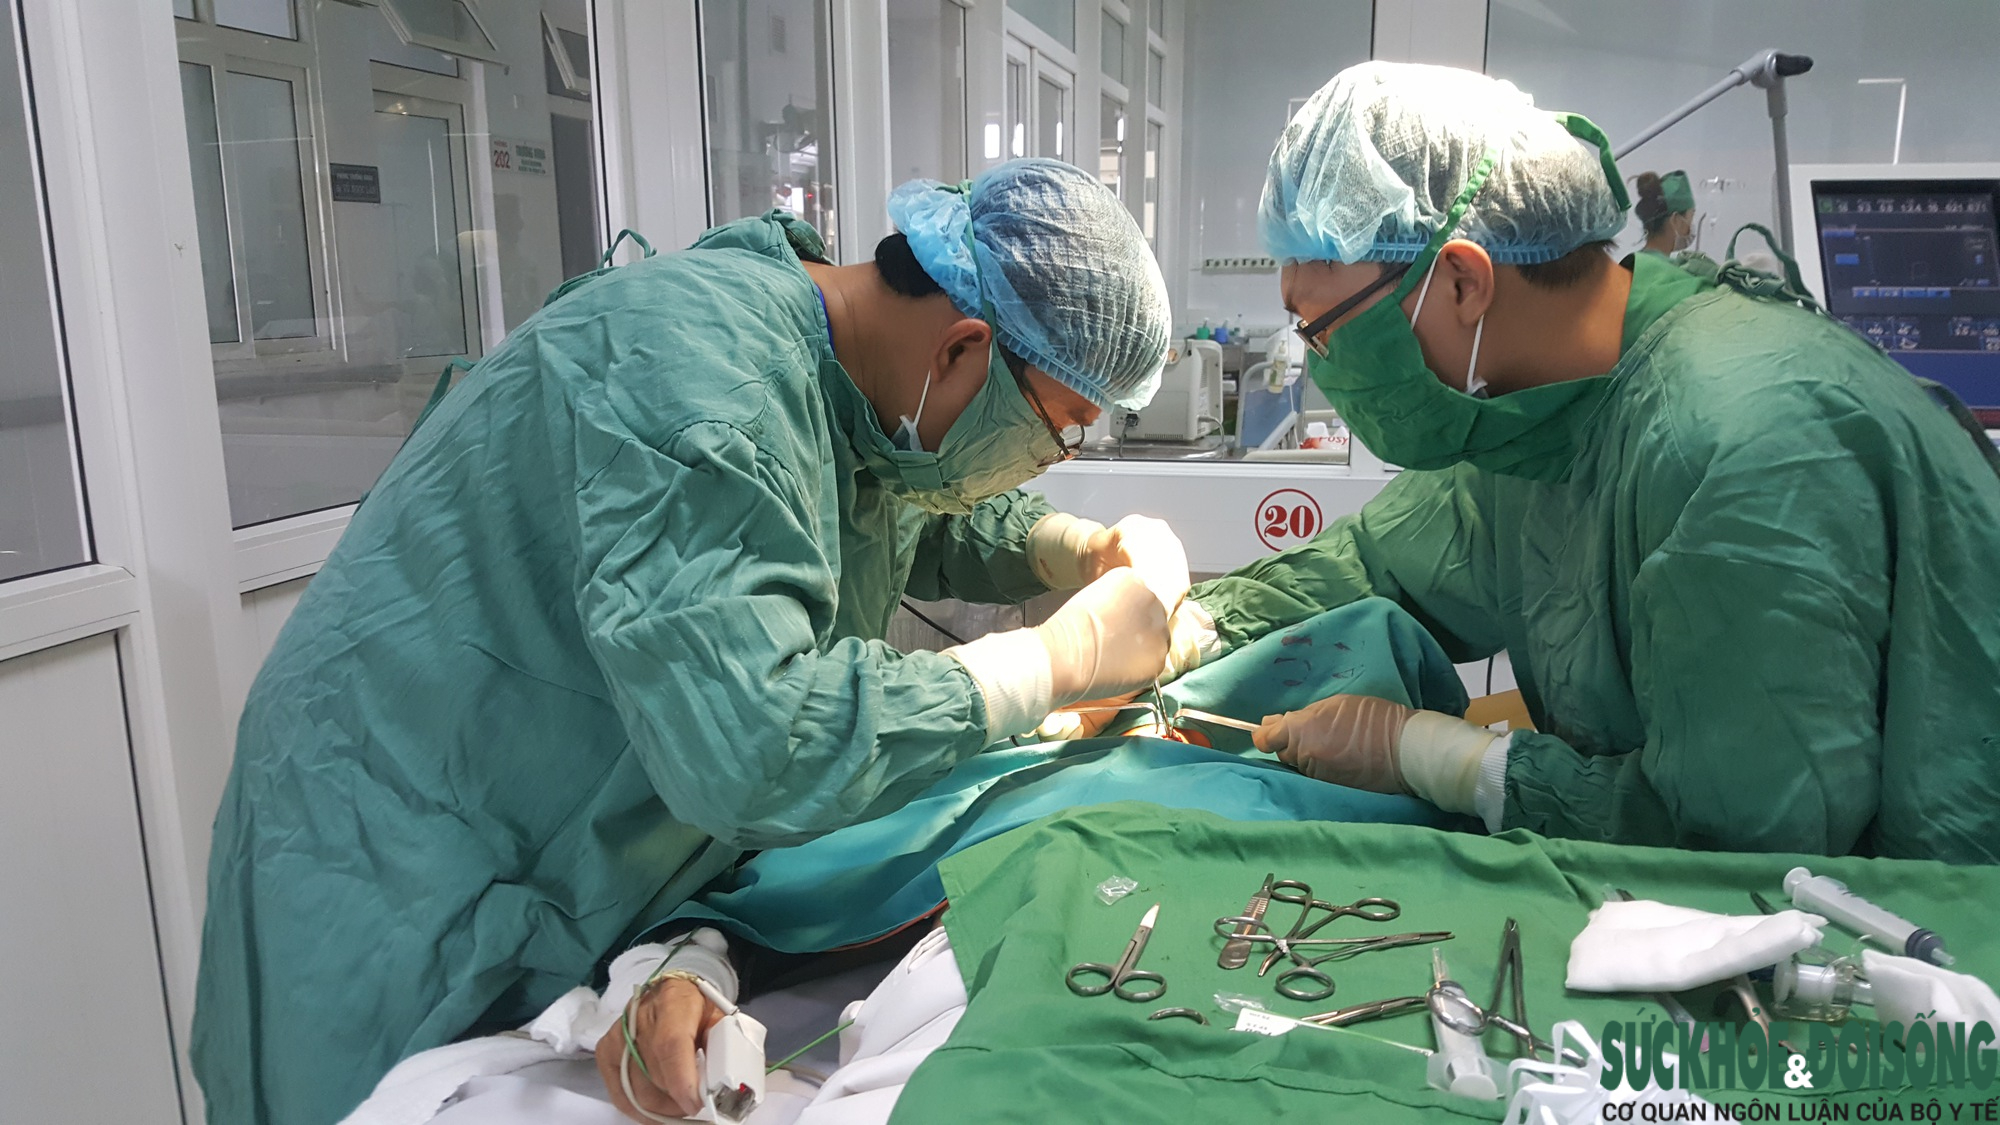 Chuyển giao kỹ thuật giúp bệnh viện nước bạn Lào phát triển  - Ảnh 6.